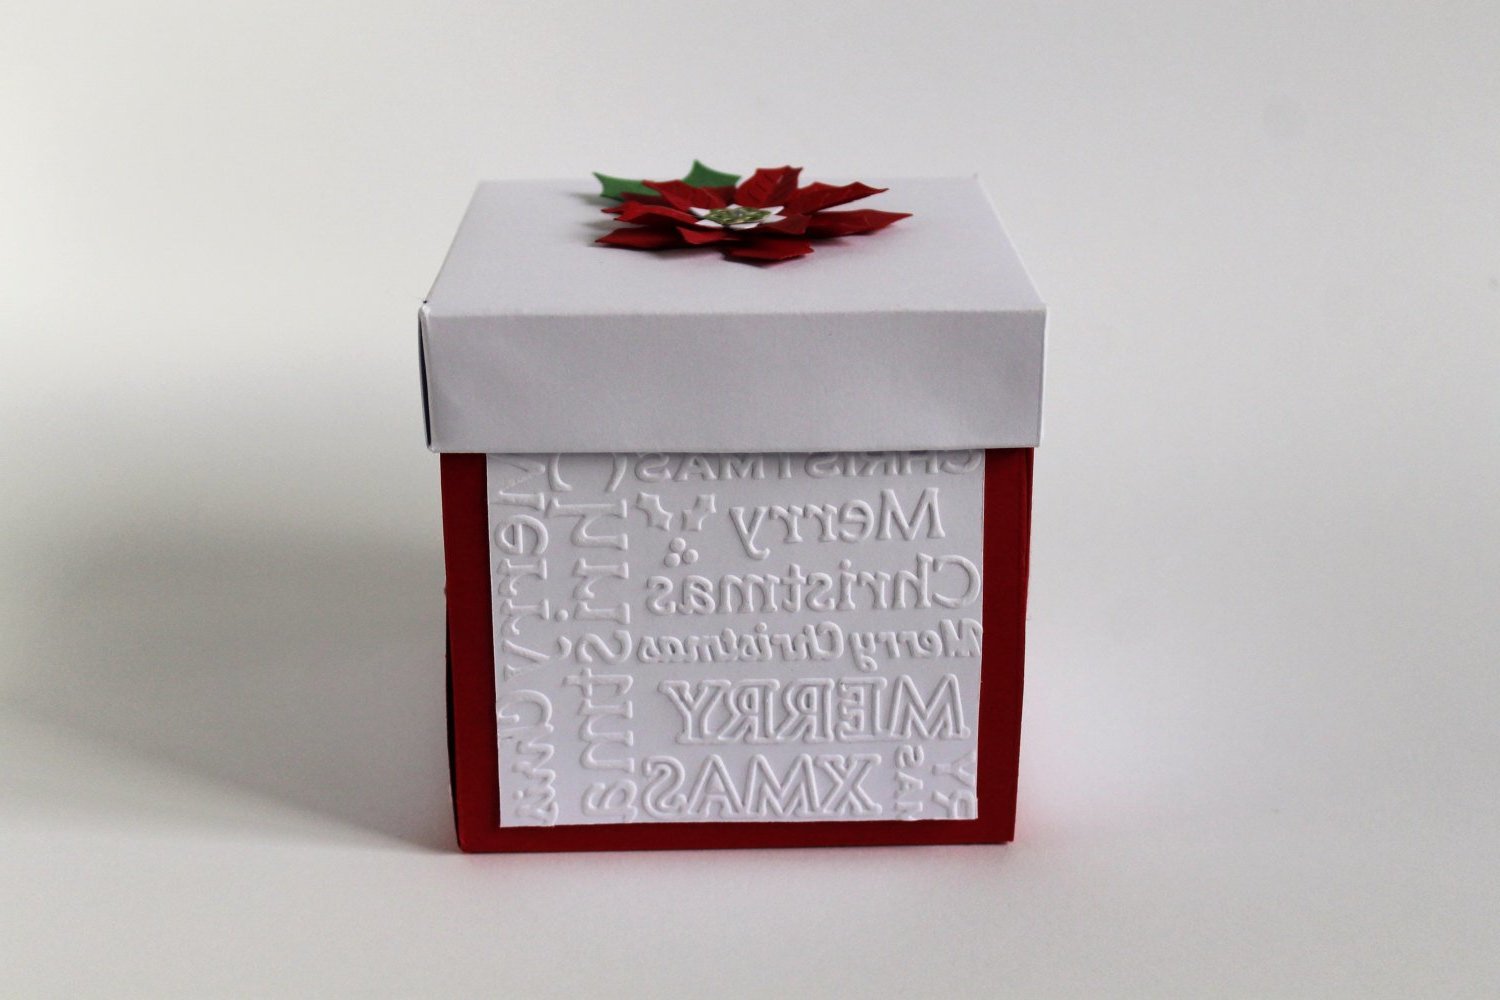 Originelle Weihnachtsgeschenke selber machen: DIY Explosionbox